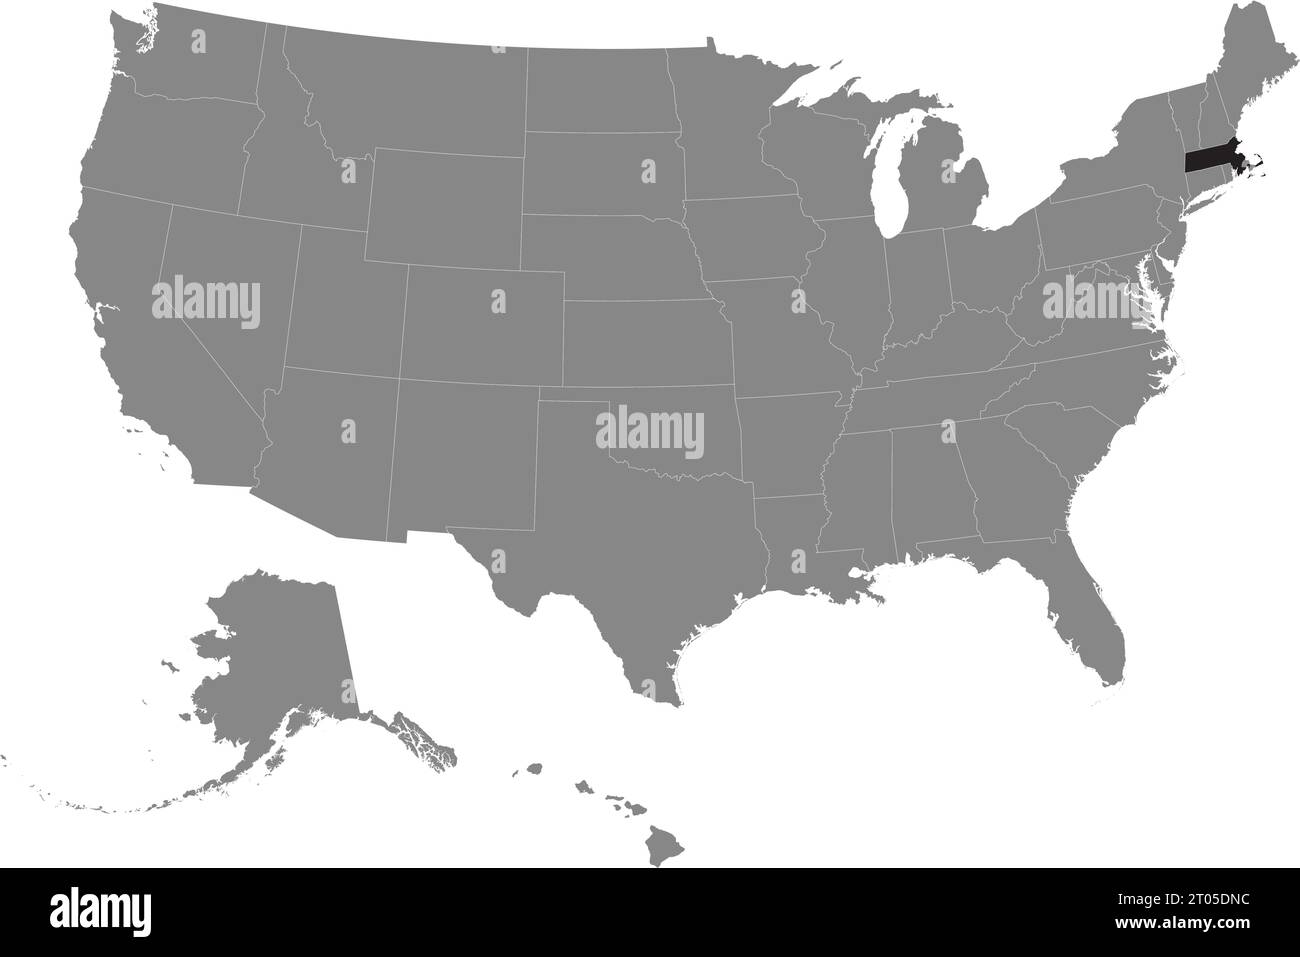 Schwarze CMYK-Bundeskarte von MASSACHUSETTS in detaillierter grauer, leerer politischer Karte der Vereinigten Staaten von Amerika auf transparentem Hintergrund Stock Vektor